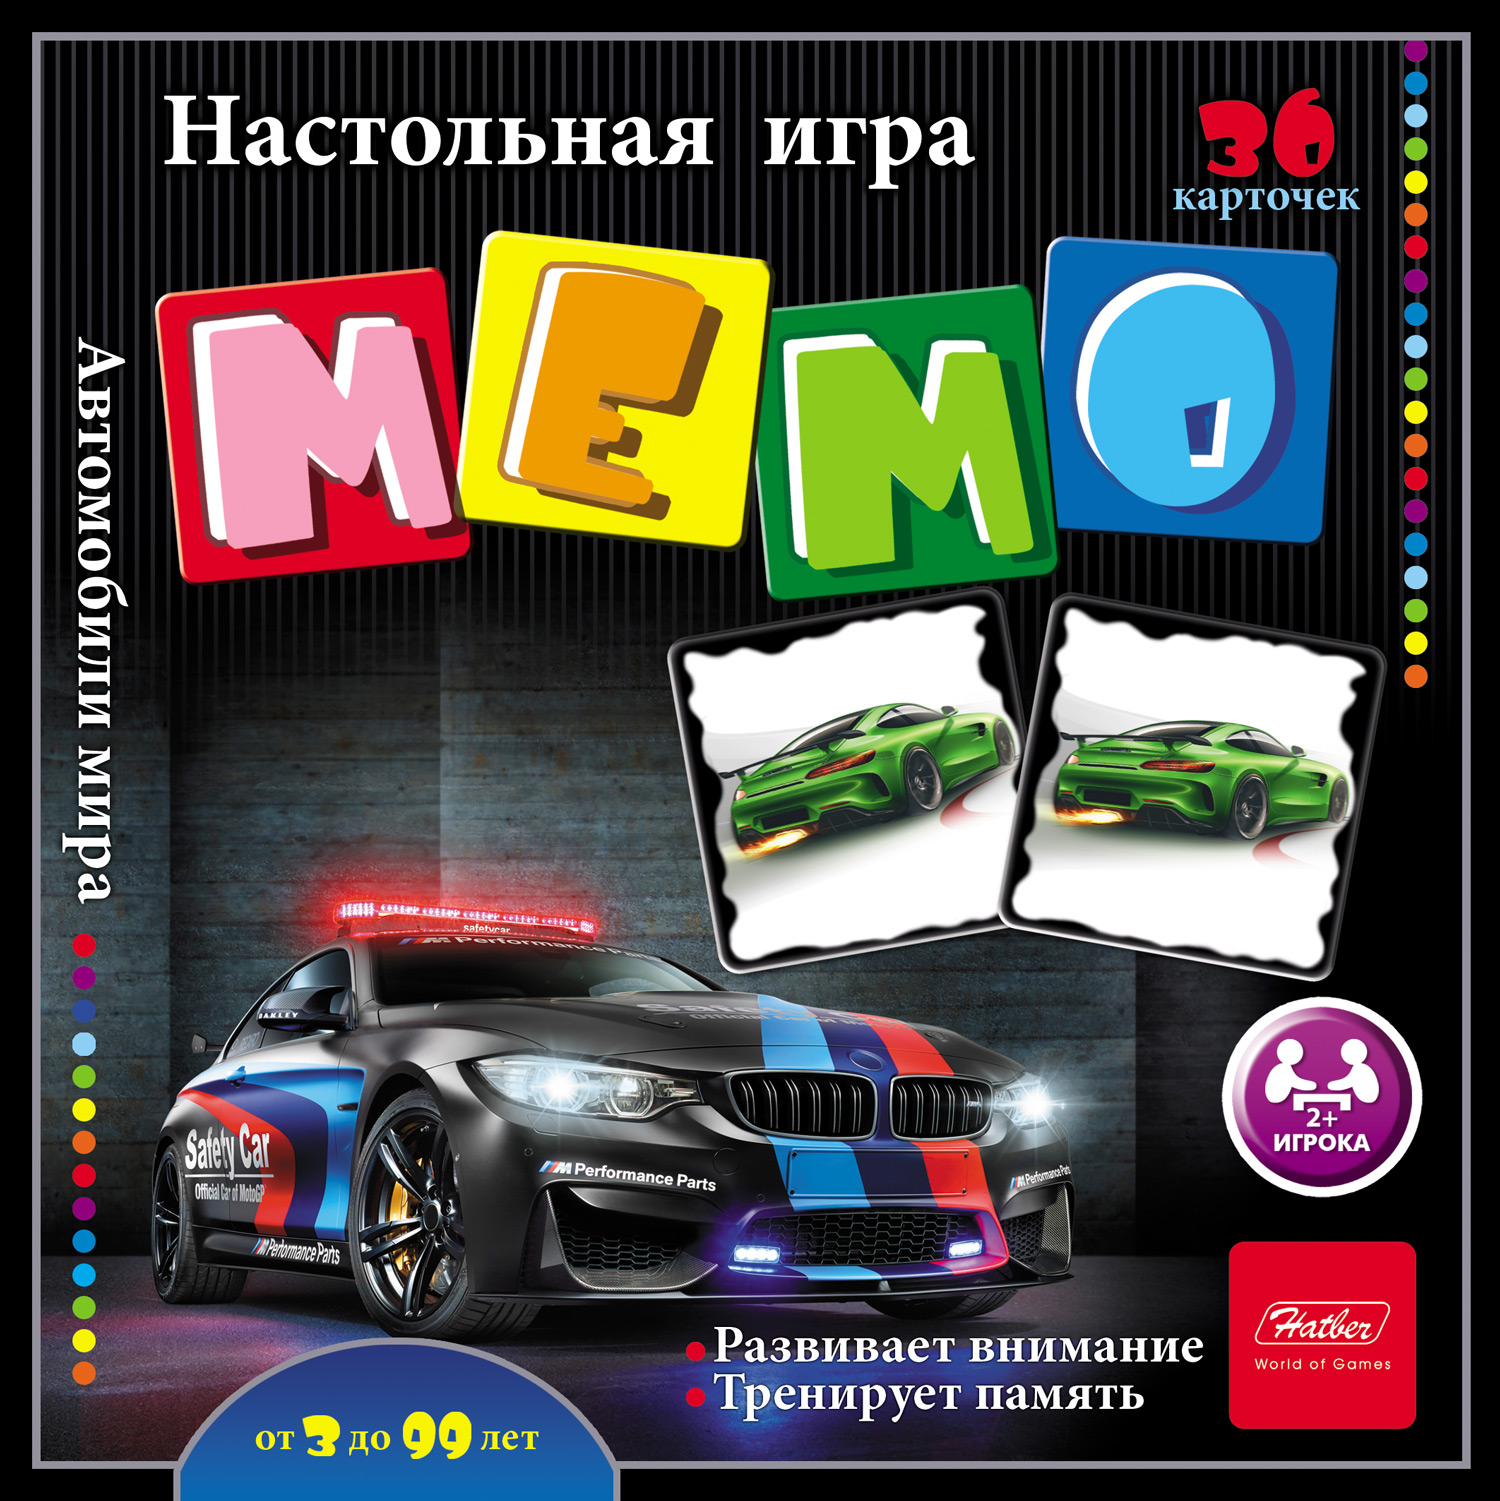 Настольная игра МЕМО 36 карточек Автомобили мира арт.36ИнМ_16890